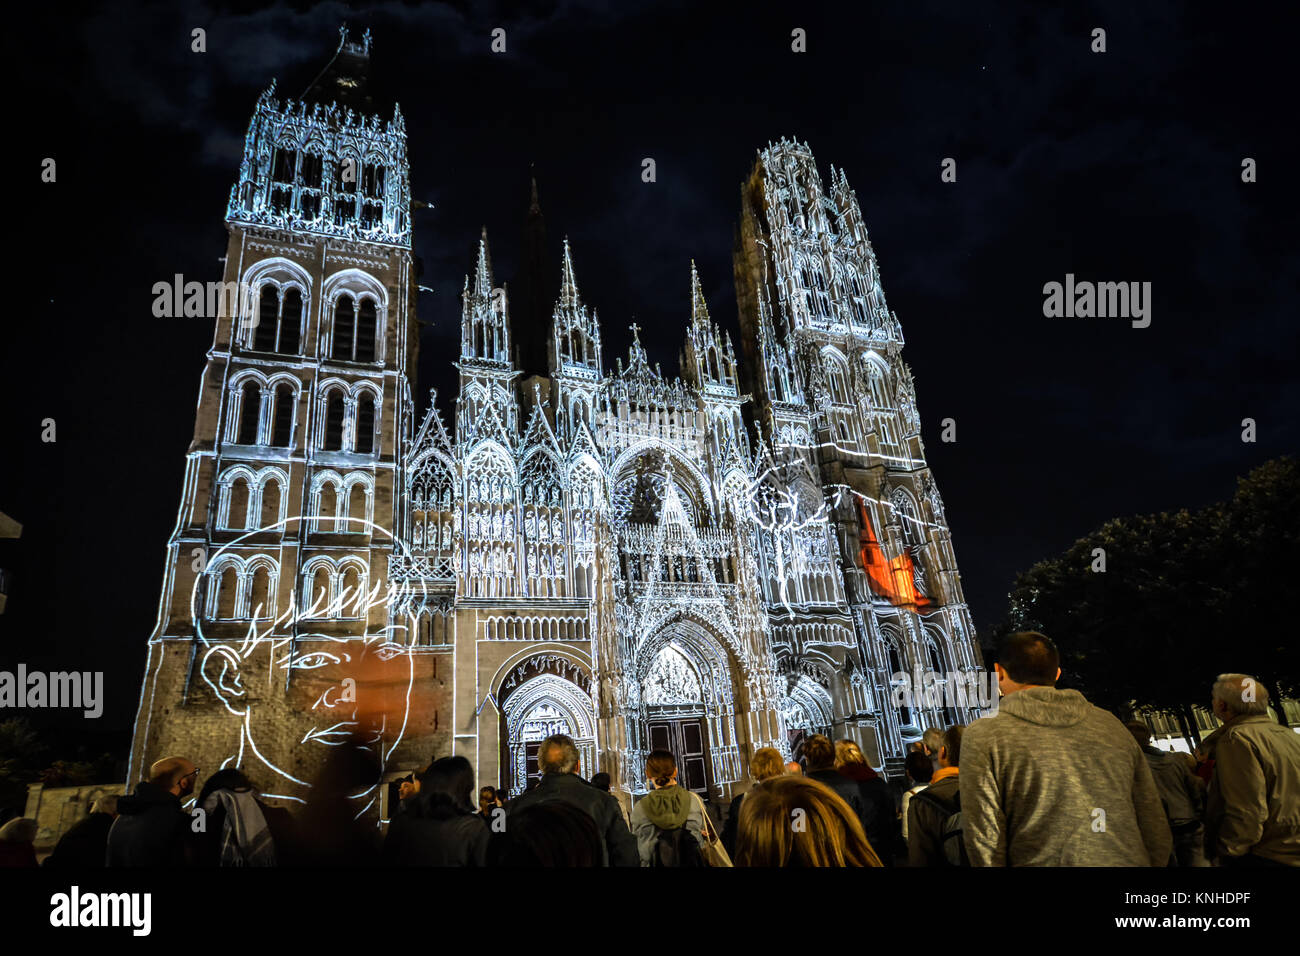 Rouen la cattedrale di mostrare la luce illumina la cattedrale gotica in Normandia città di Rouen Francia a tarda sera Foto Stock